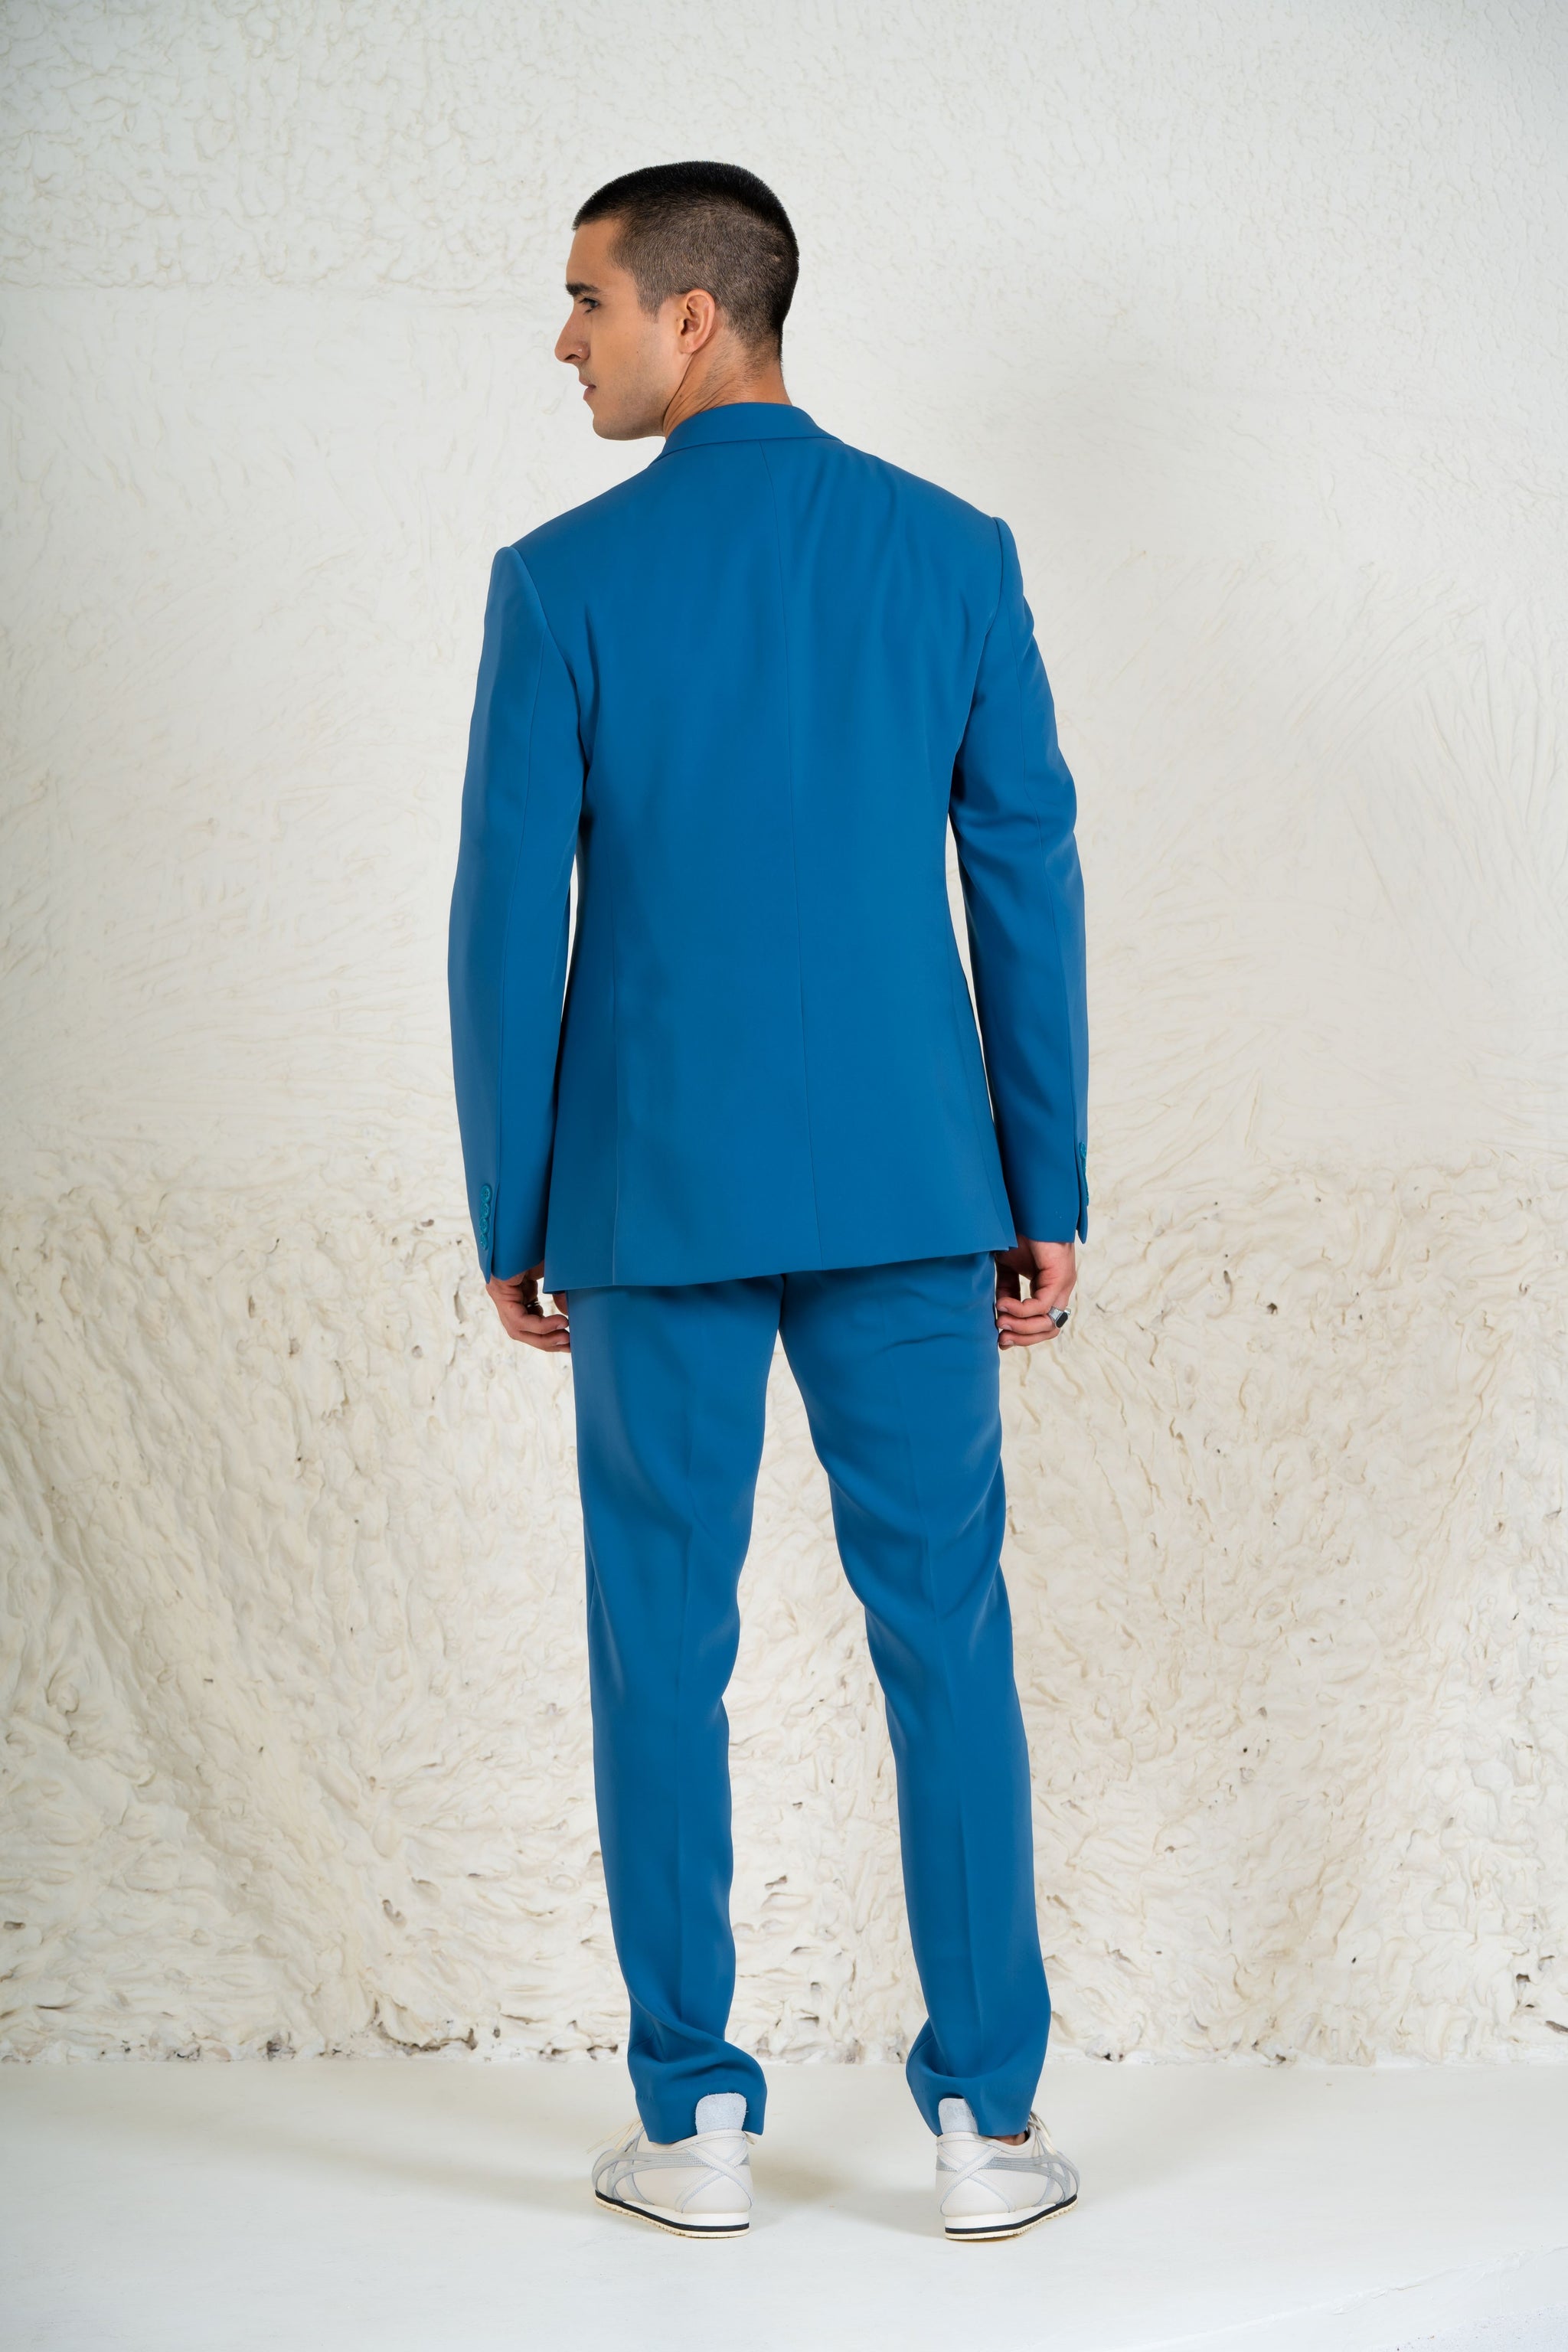 Teal Blue Suit